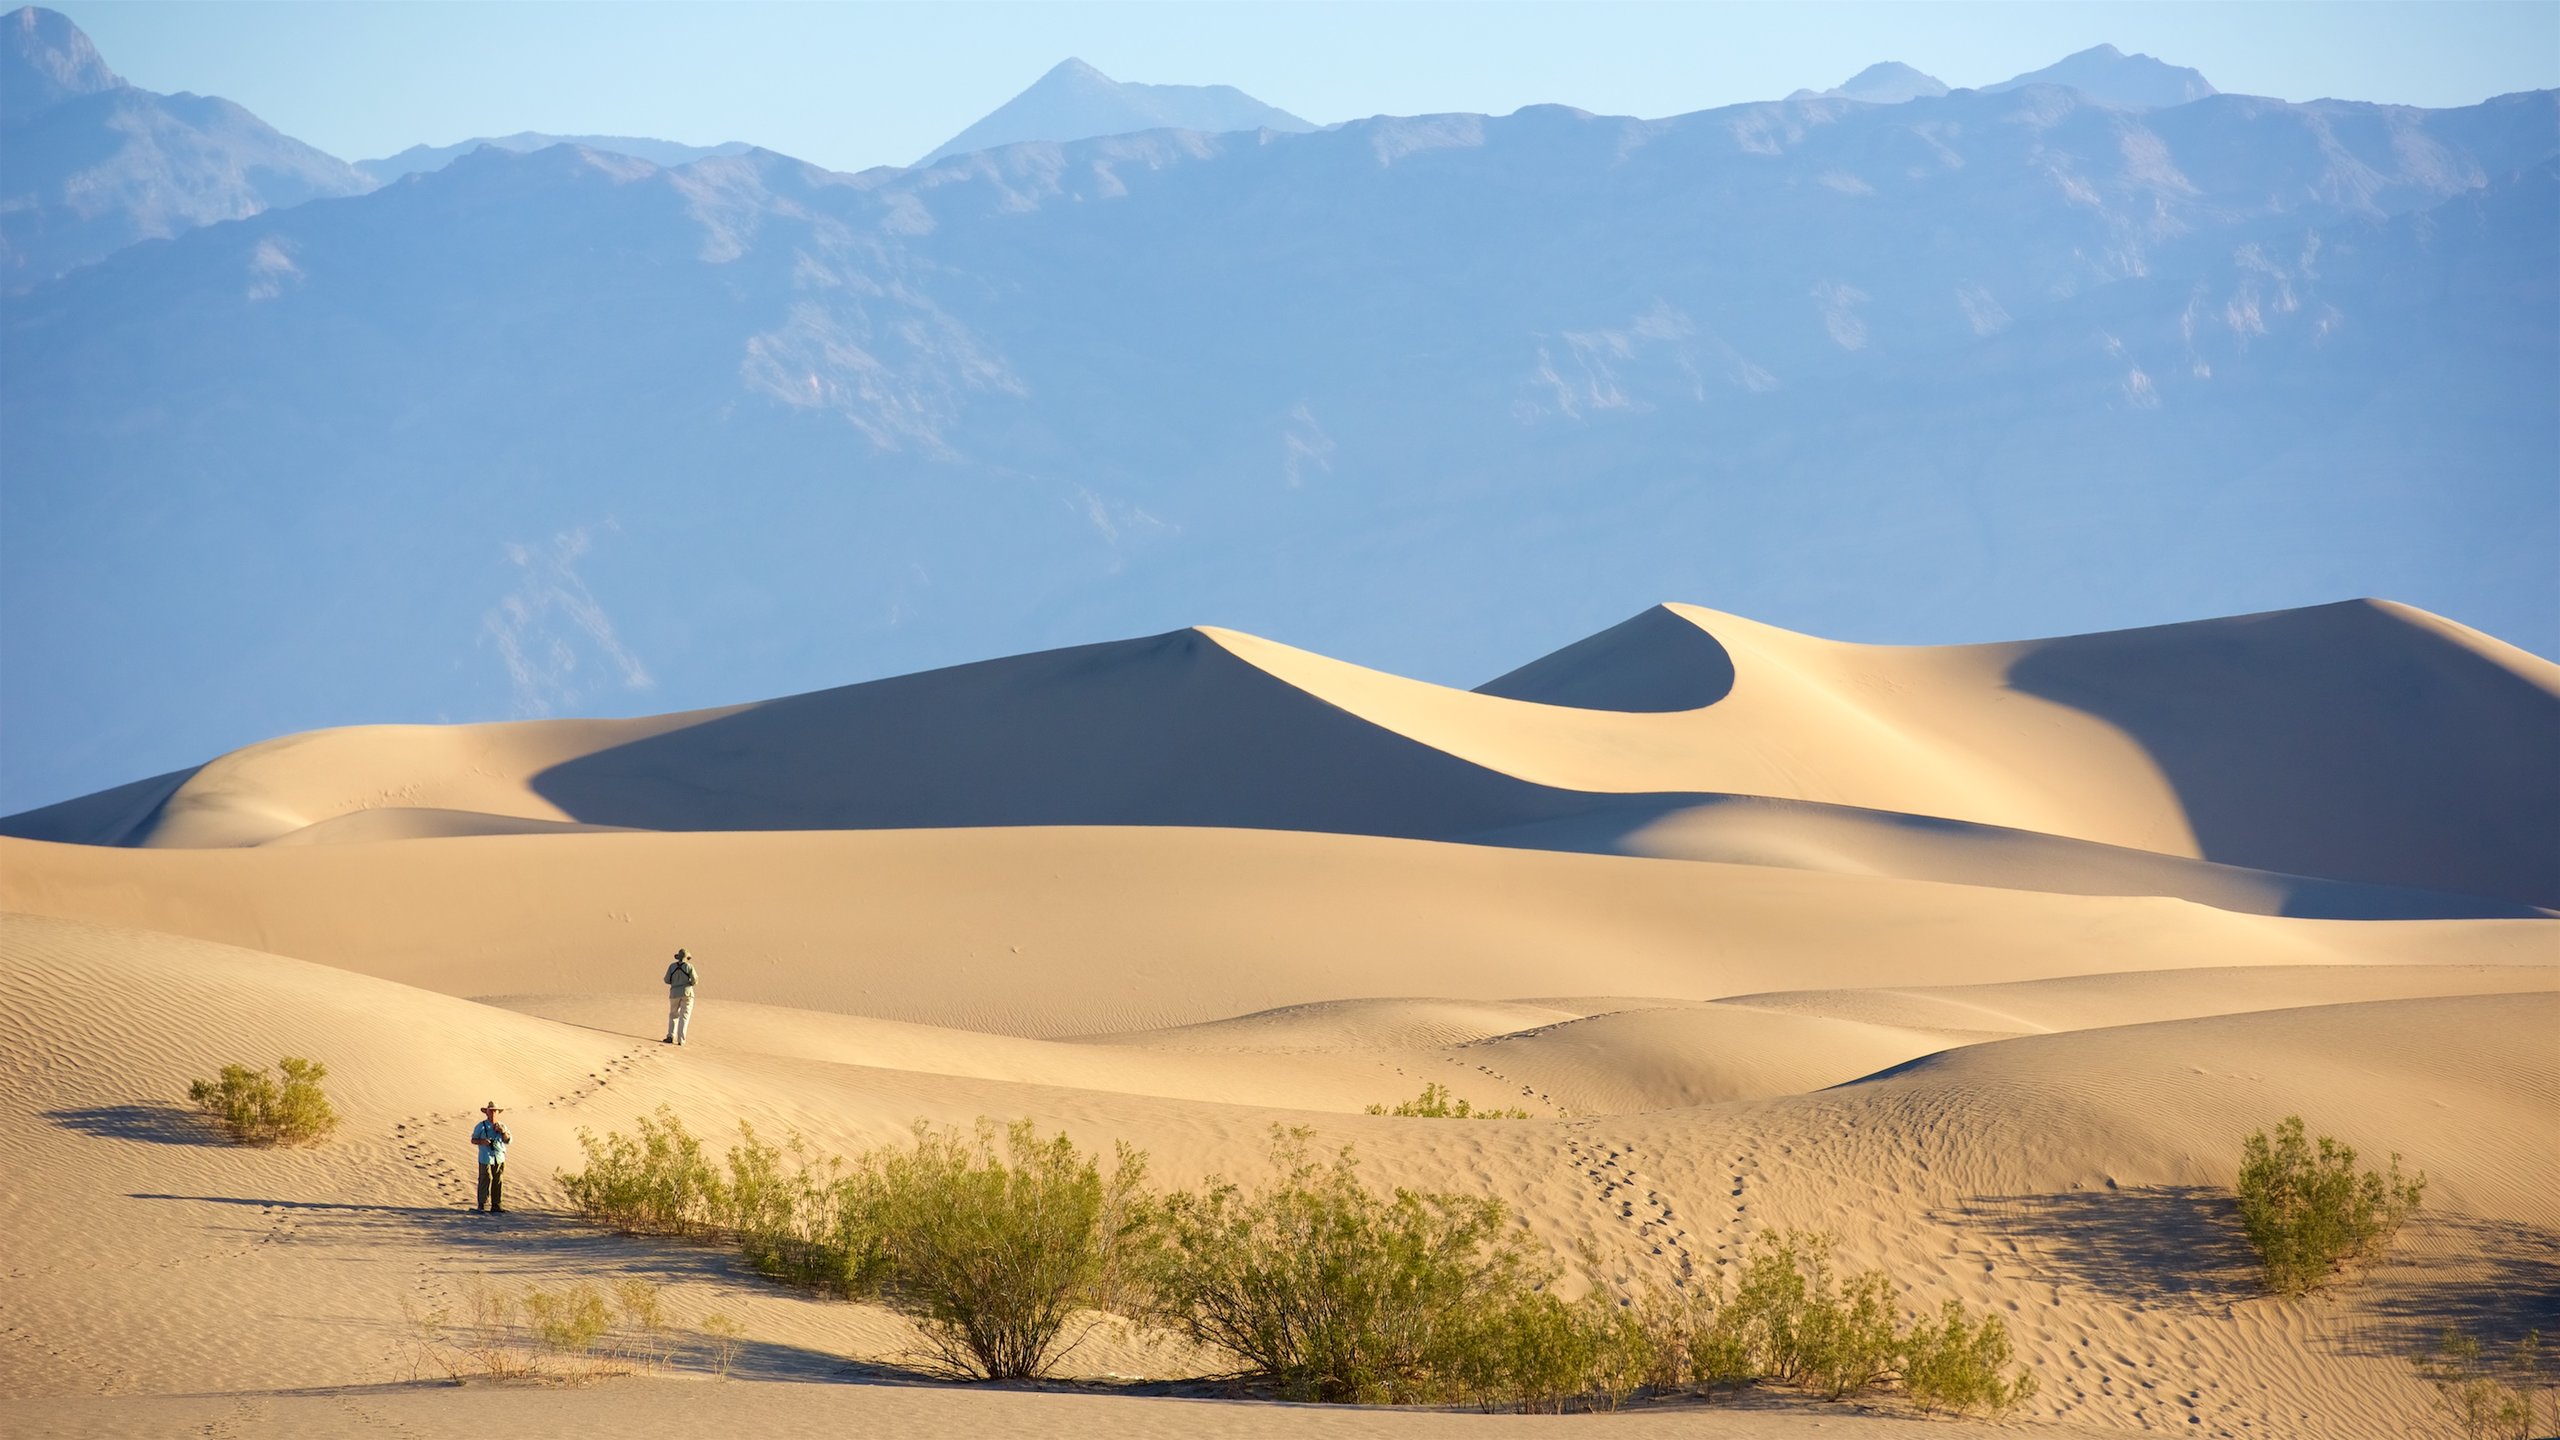 Mojave Desert, California, US